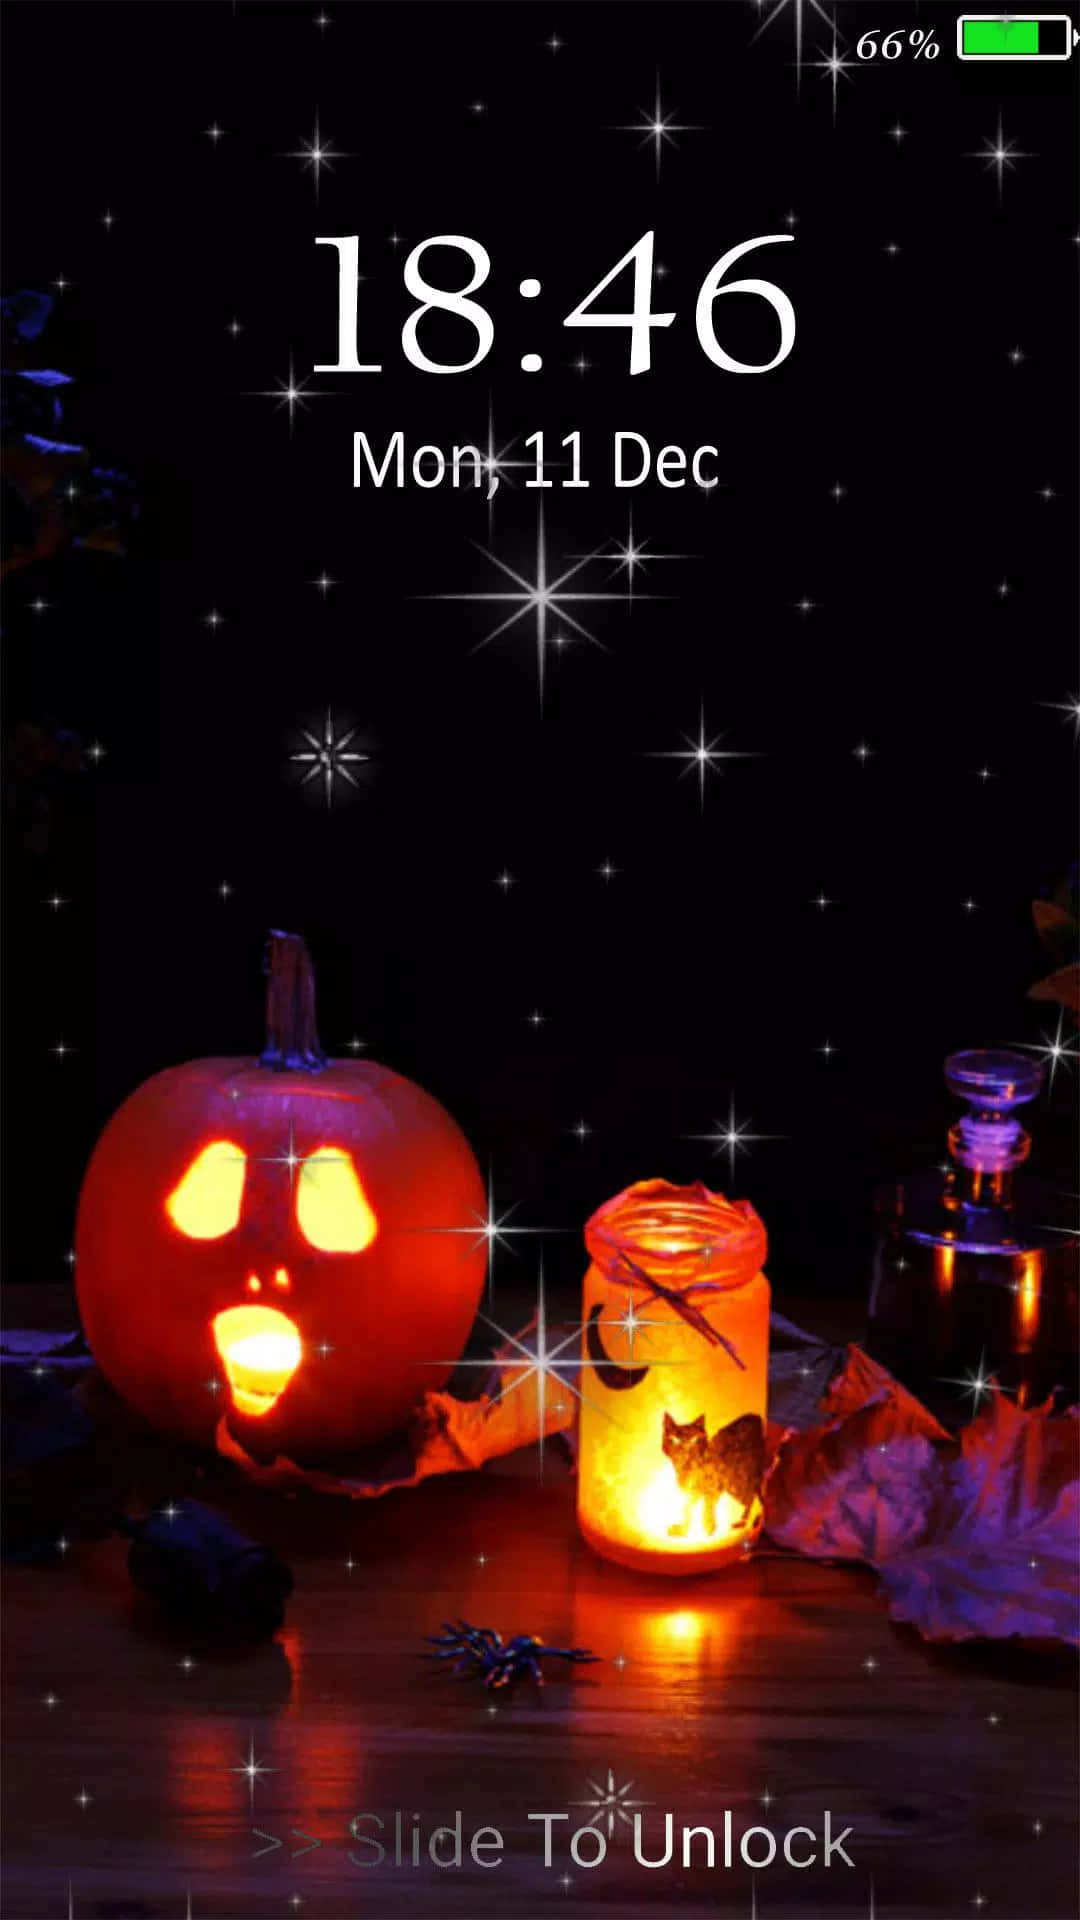 Halloweenthema - Bildschirmfoto Wallpaper